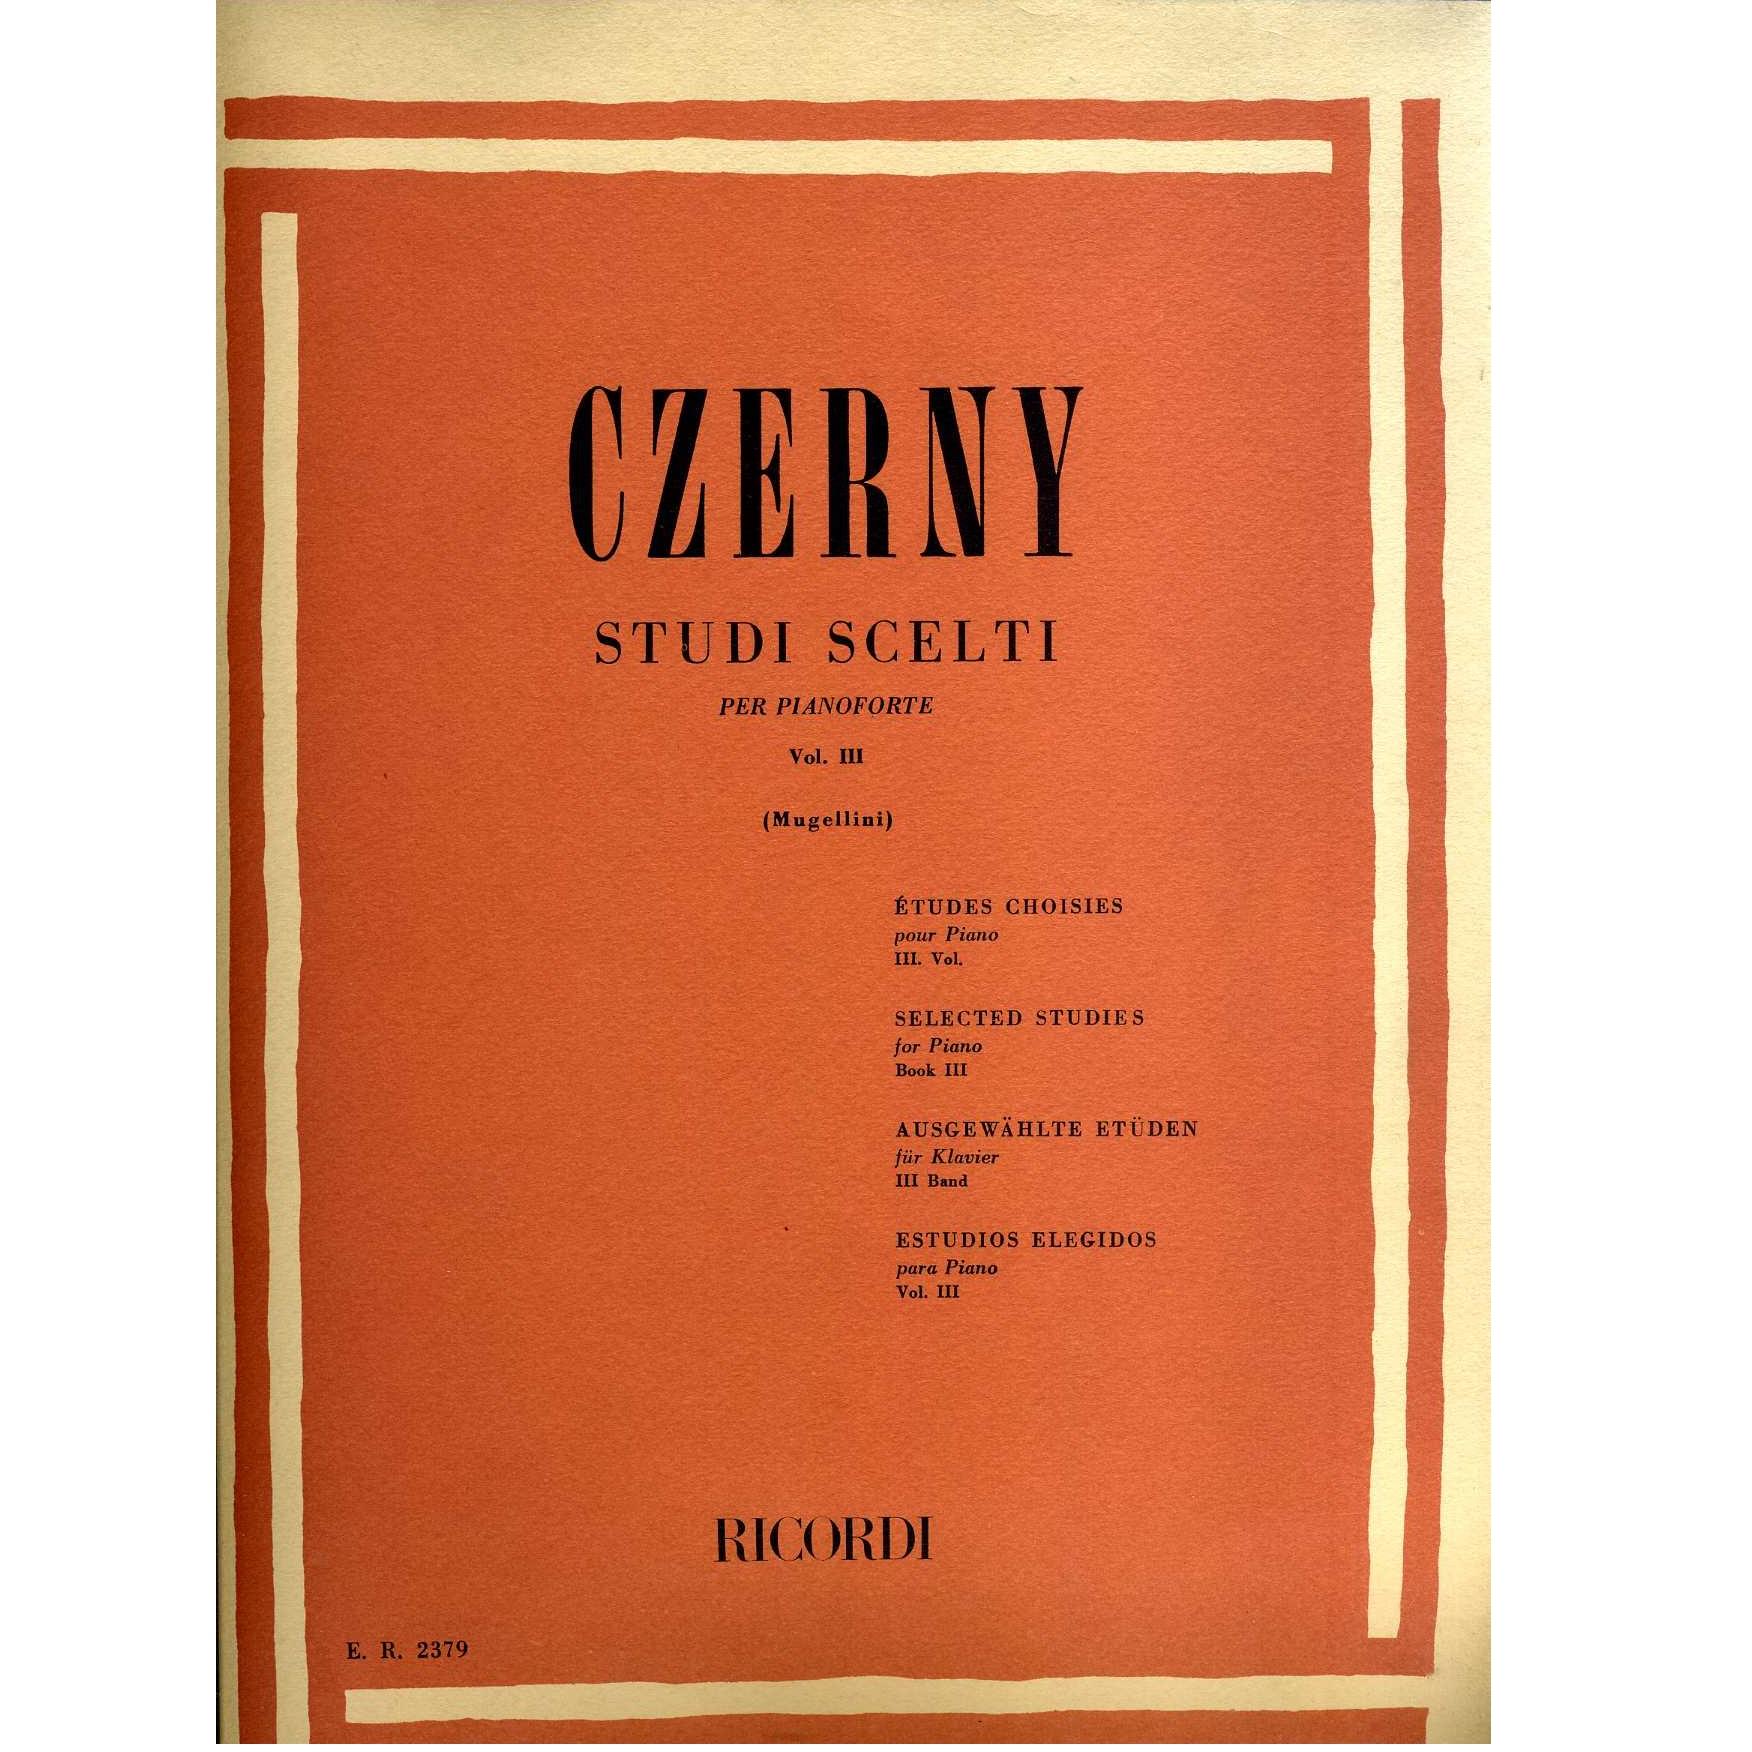 Czerny STUDI SCELTI per pianoforte Vol. III (Mugellini) - Ricordi